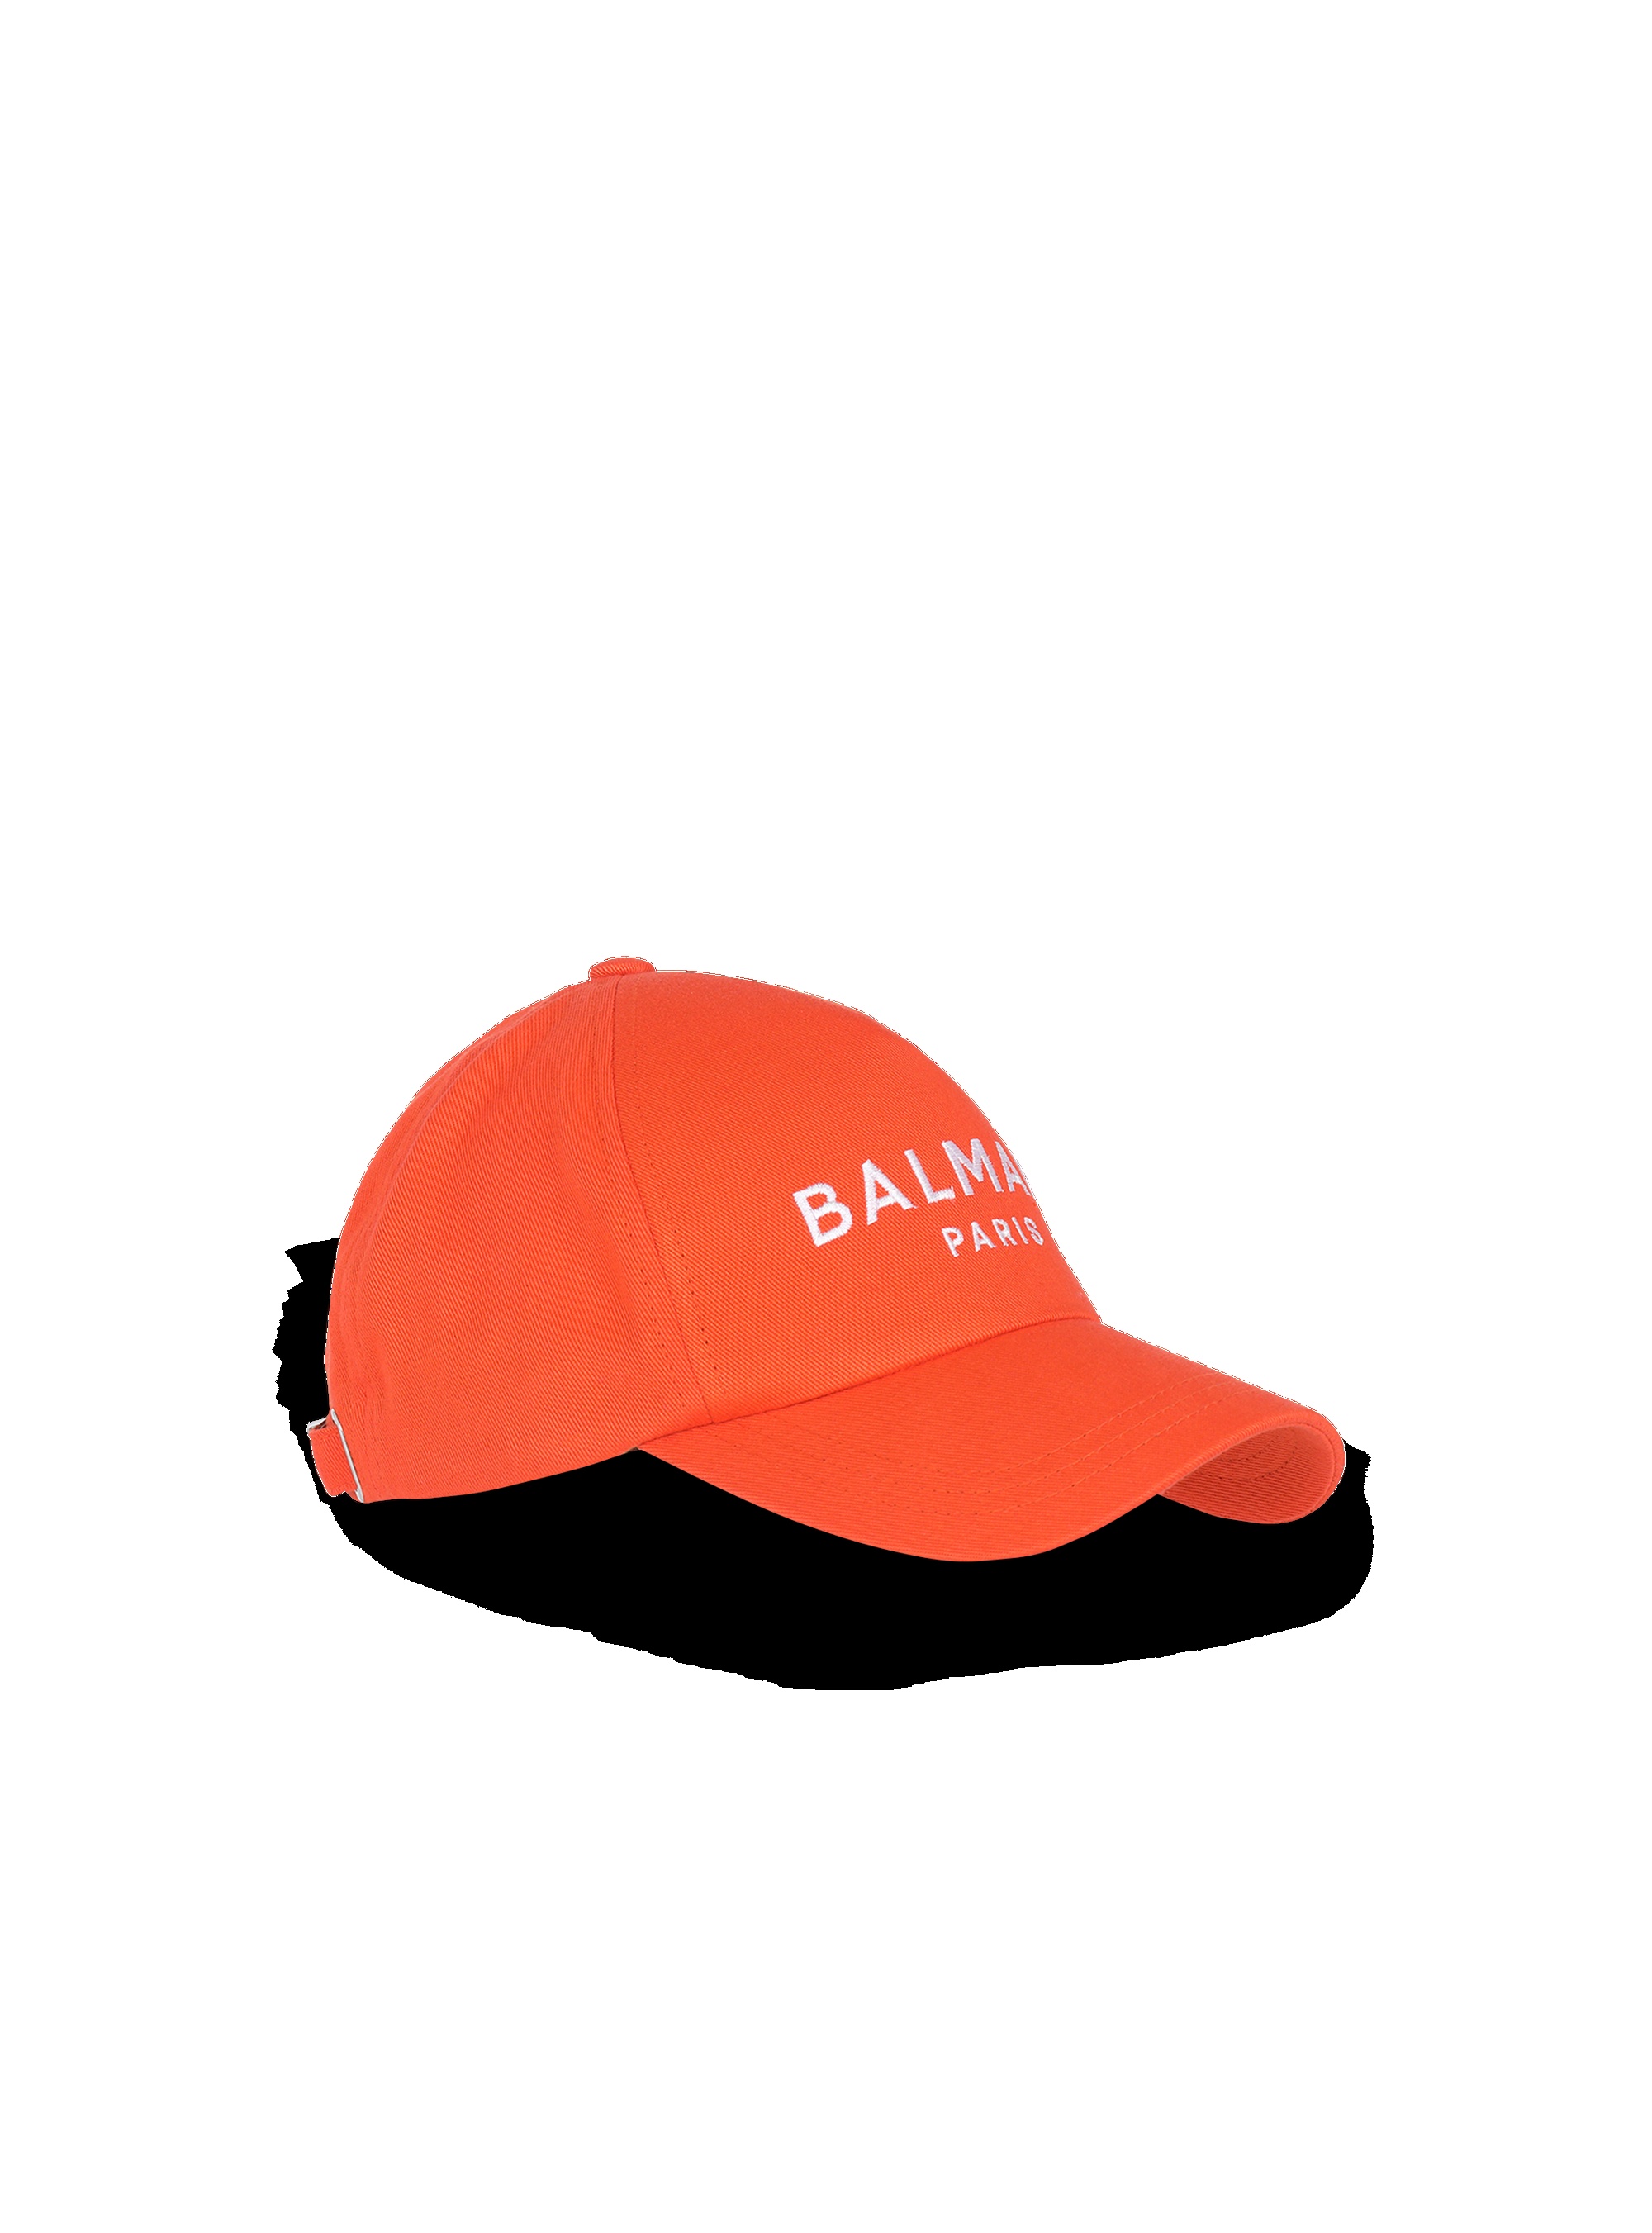 Cotton cap with Balmain logo - 2